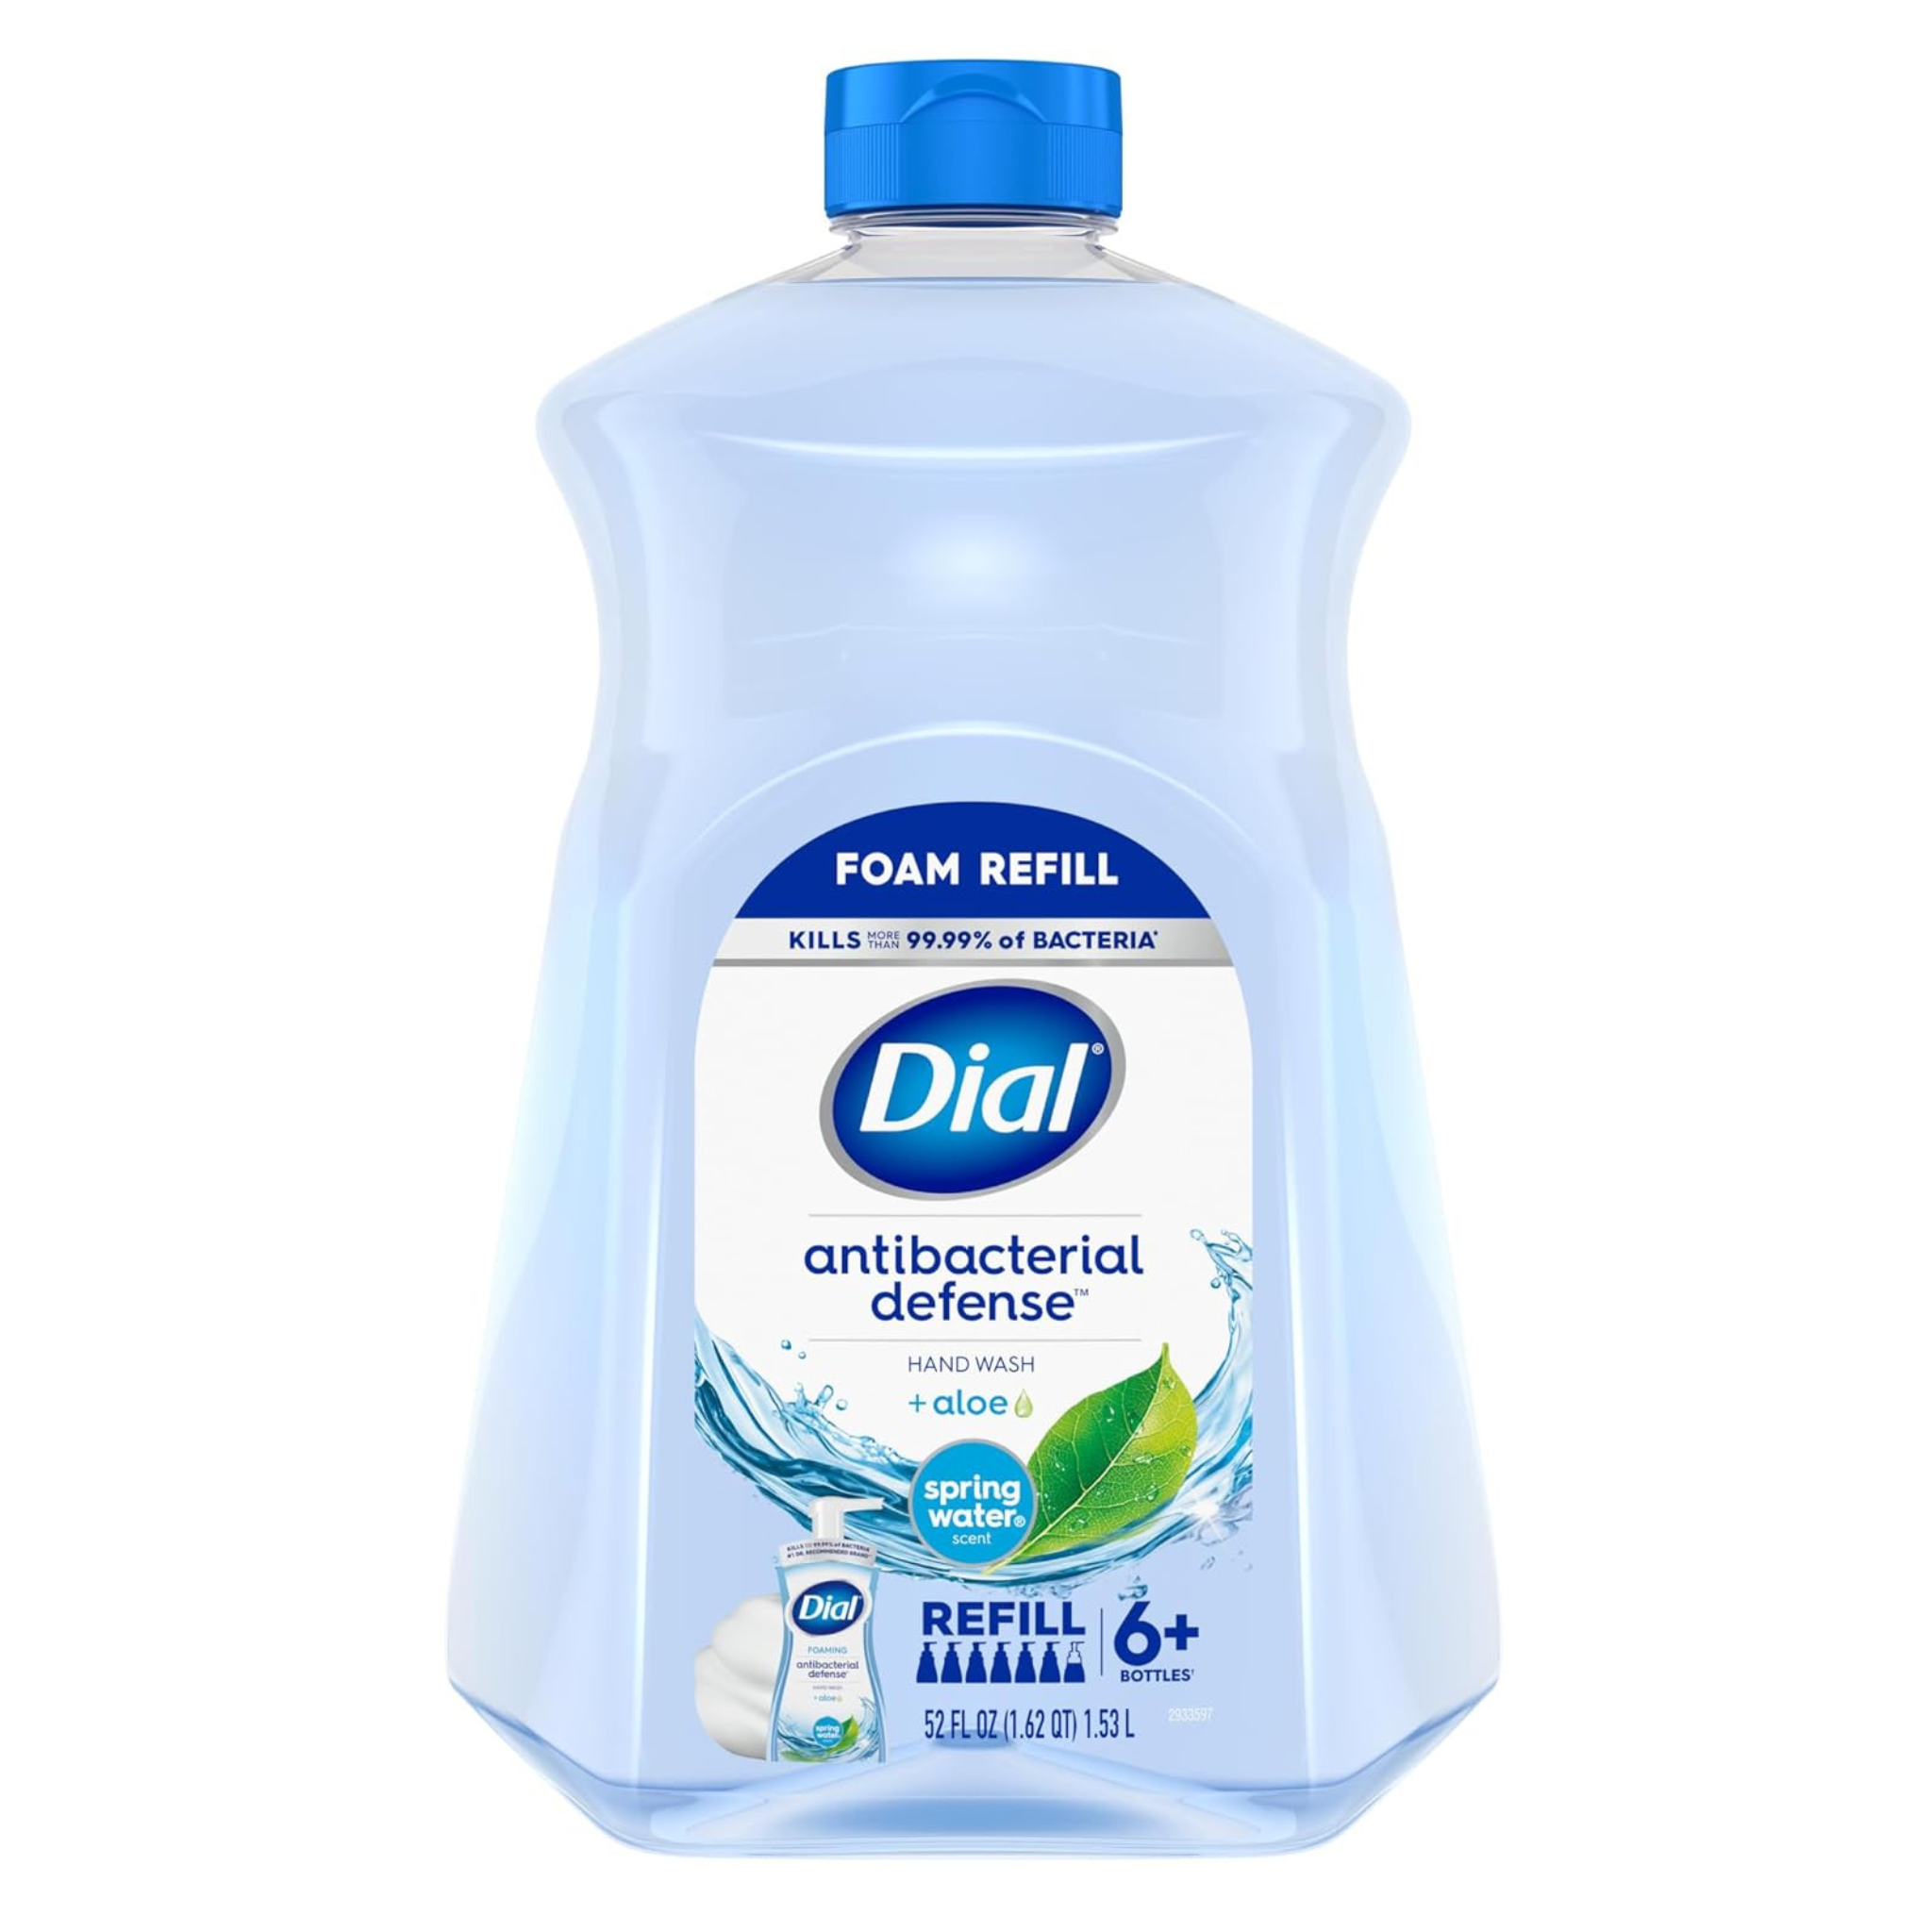 52-Oz Dial Antibacterial Foaming Hand Soap Refill